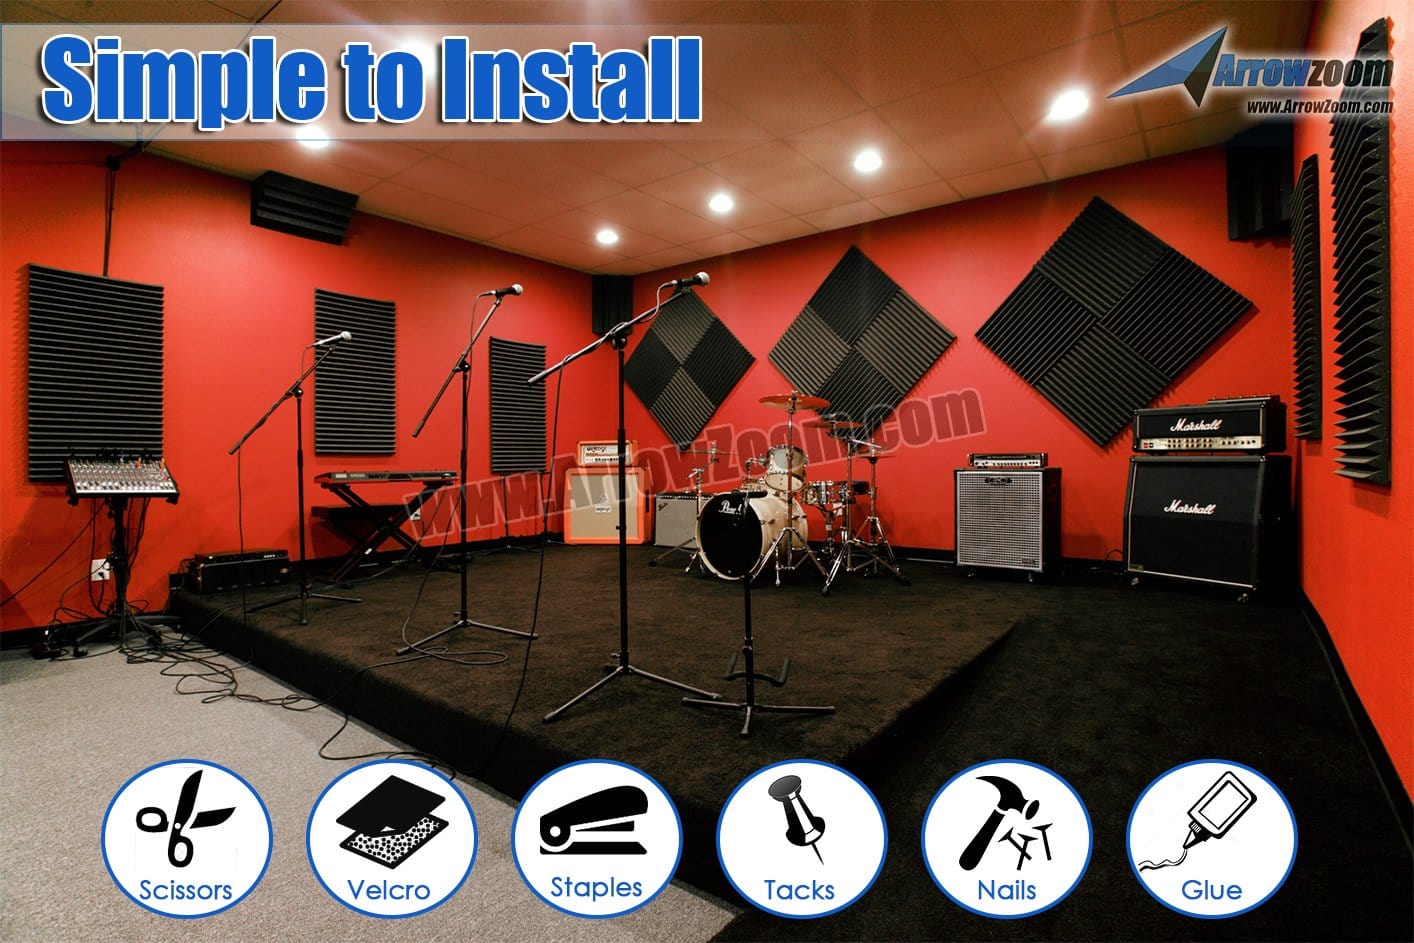 New 24 pcs Wedge Tiles Acoustic Panels Sound Absorption Studio Soundproof Foam 7 Colors KK1134